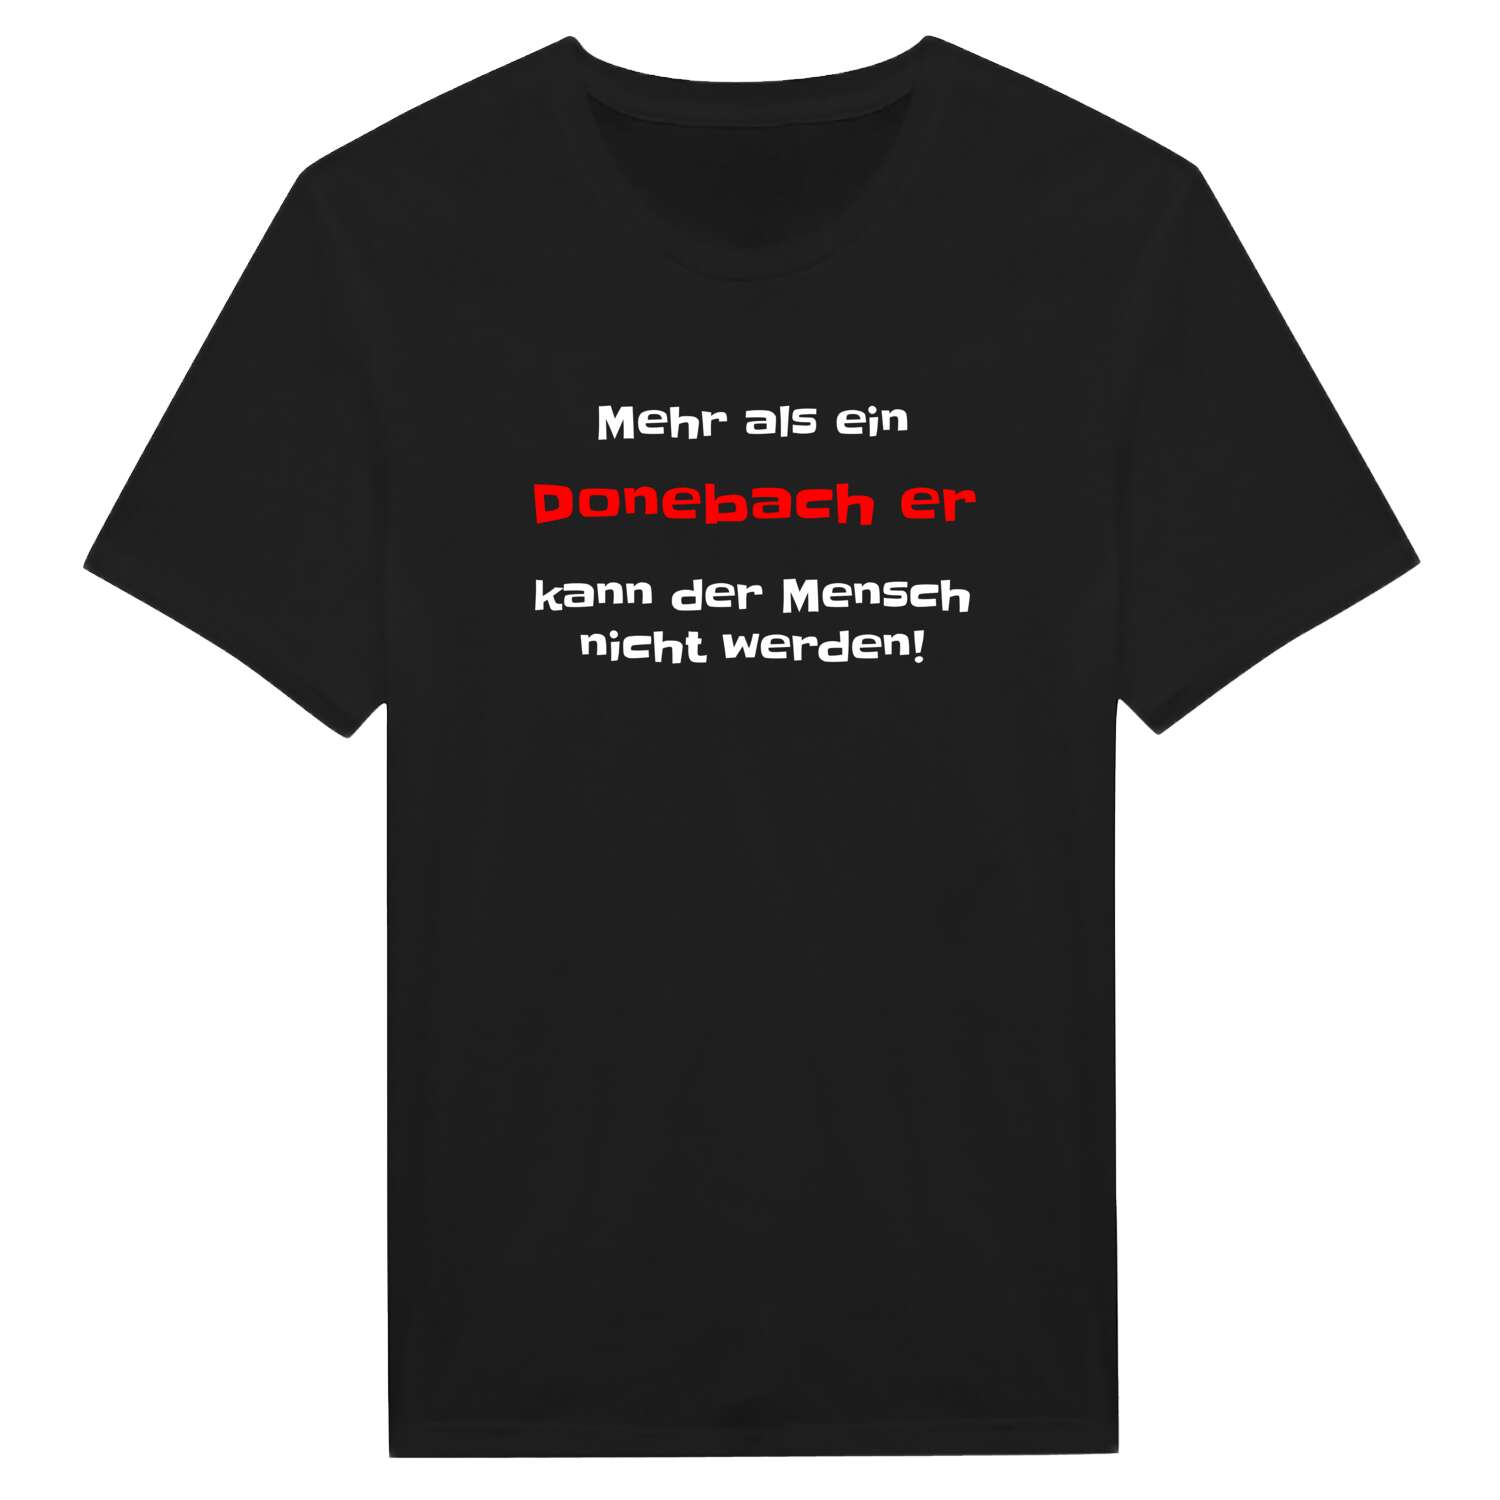 Donebach  T-Shirt »Mehr als ein«